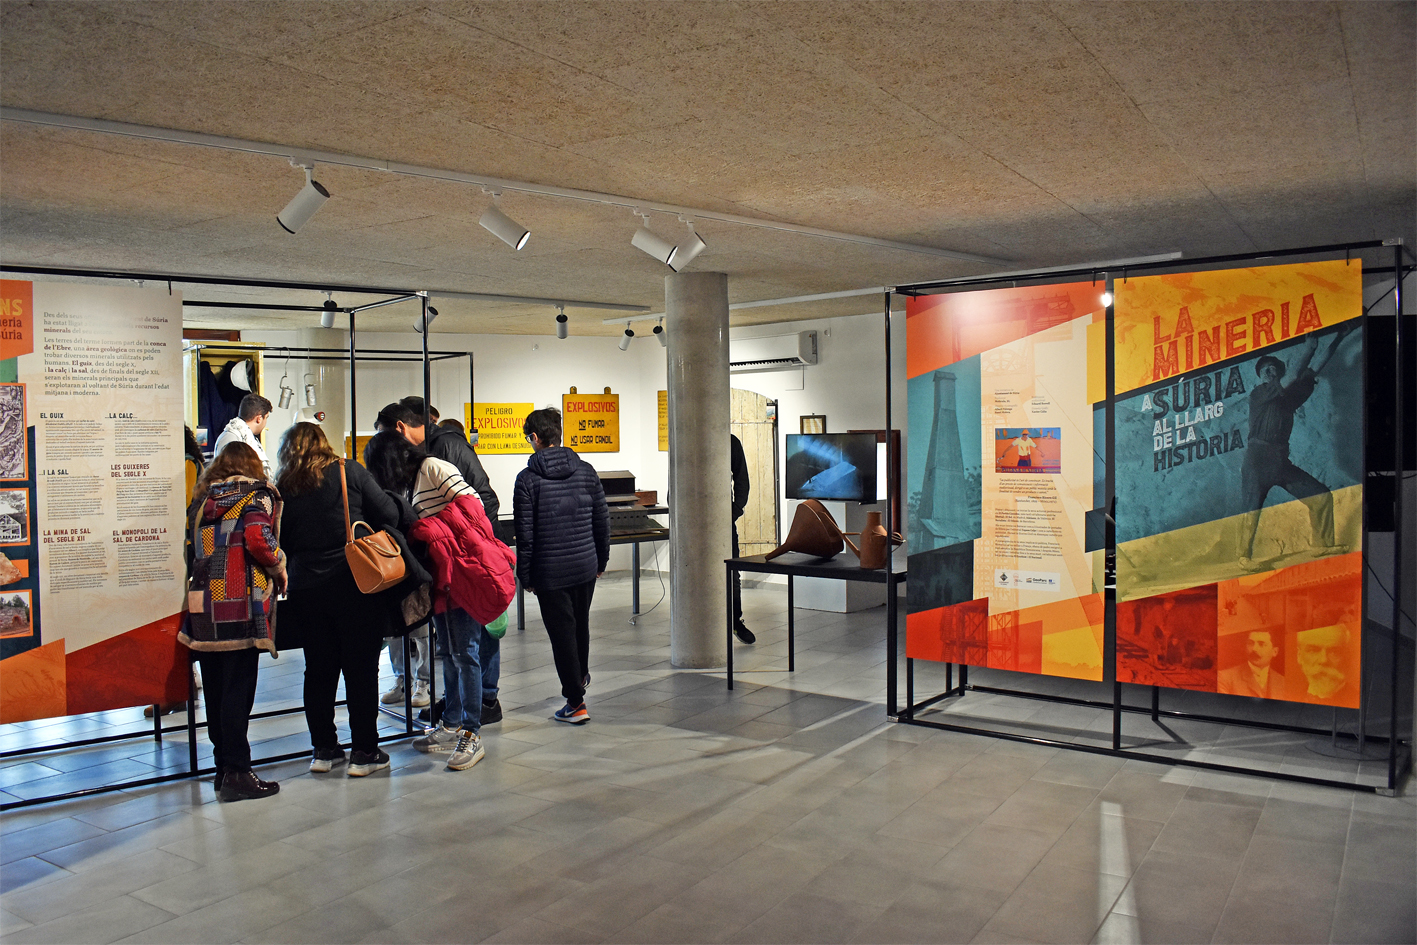 Visites al centre d'interpretació del Museu de la Mineria, durant la 20a Fira Medieval d'Oficis de Súria.